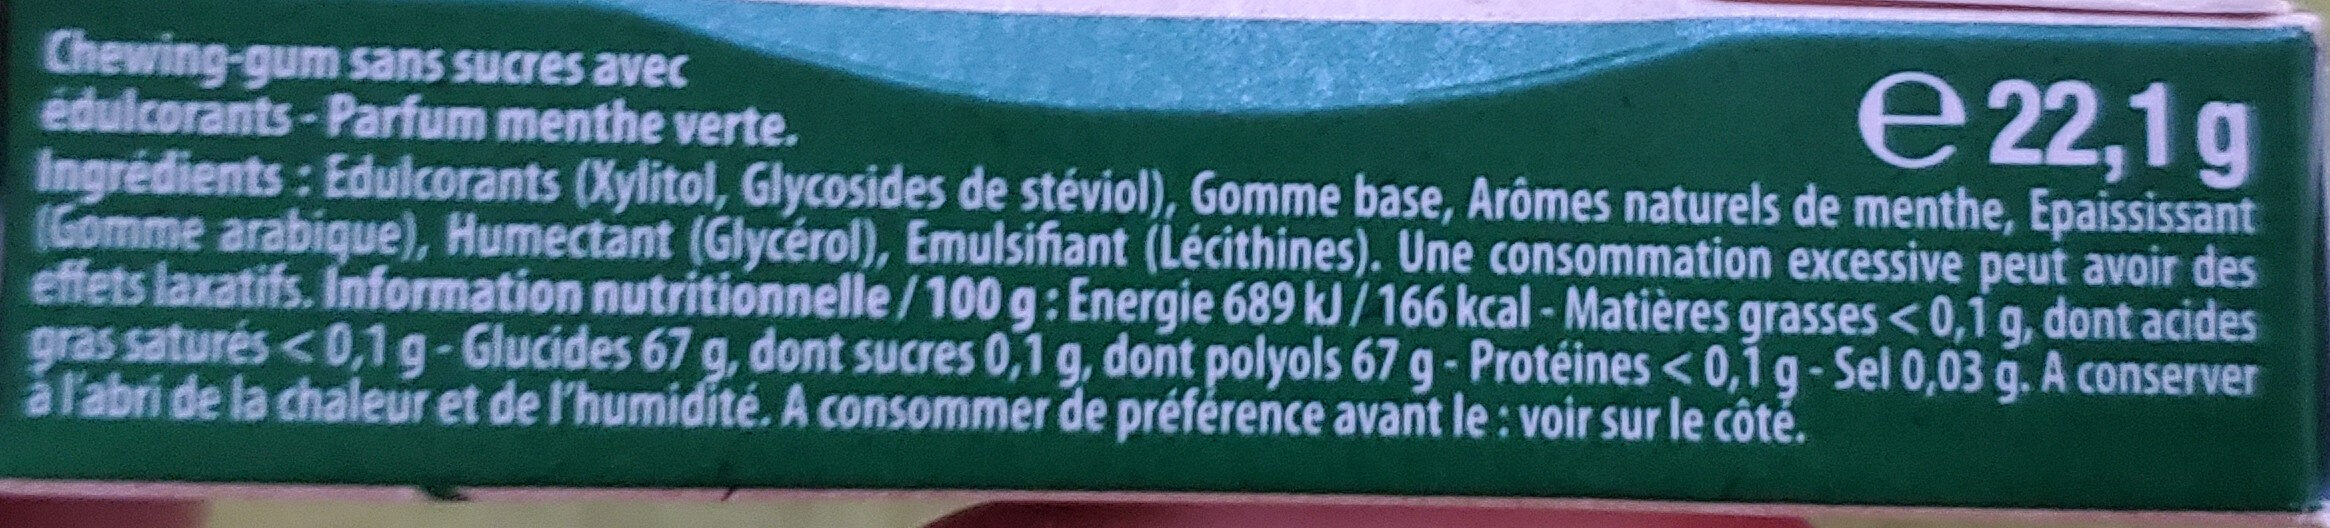 Simple chewing-gum - Ingredients - fr